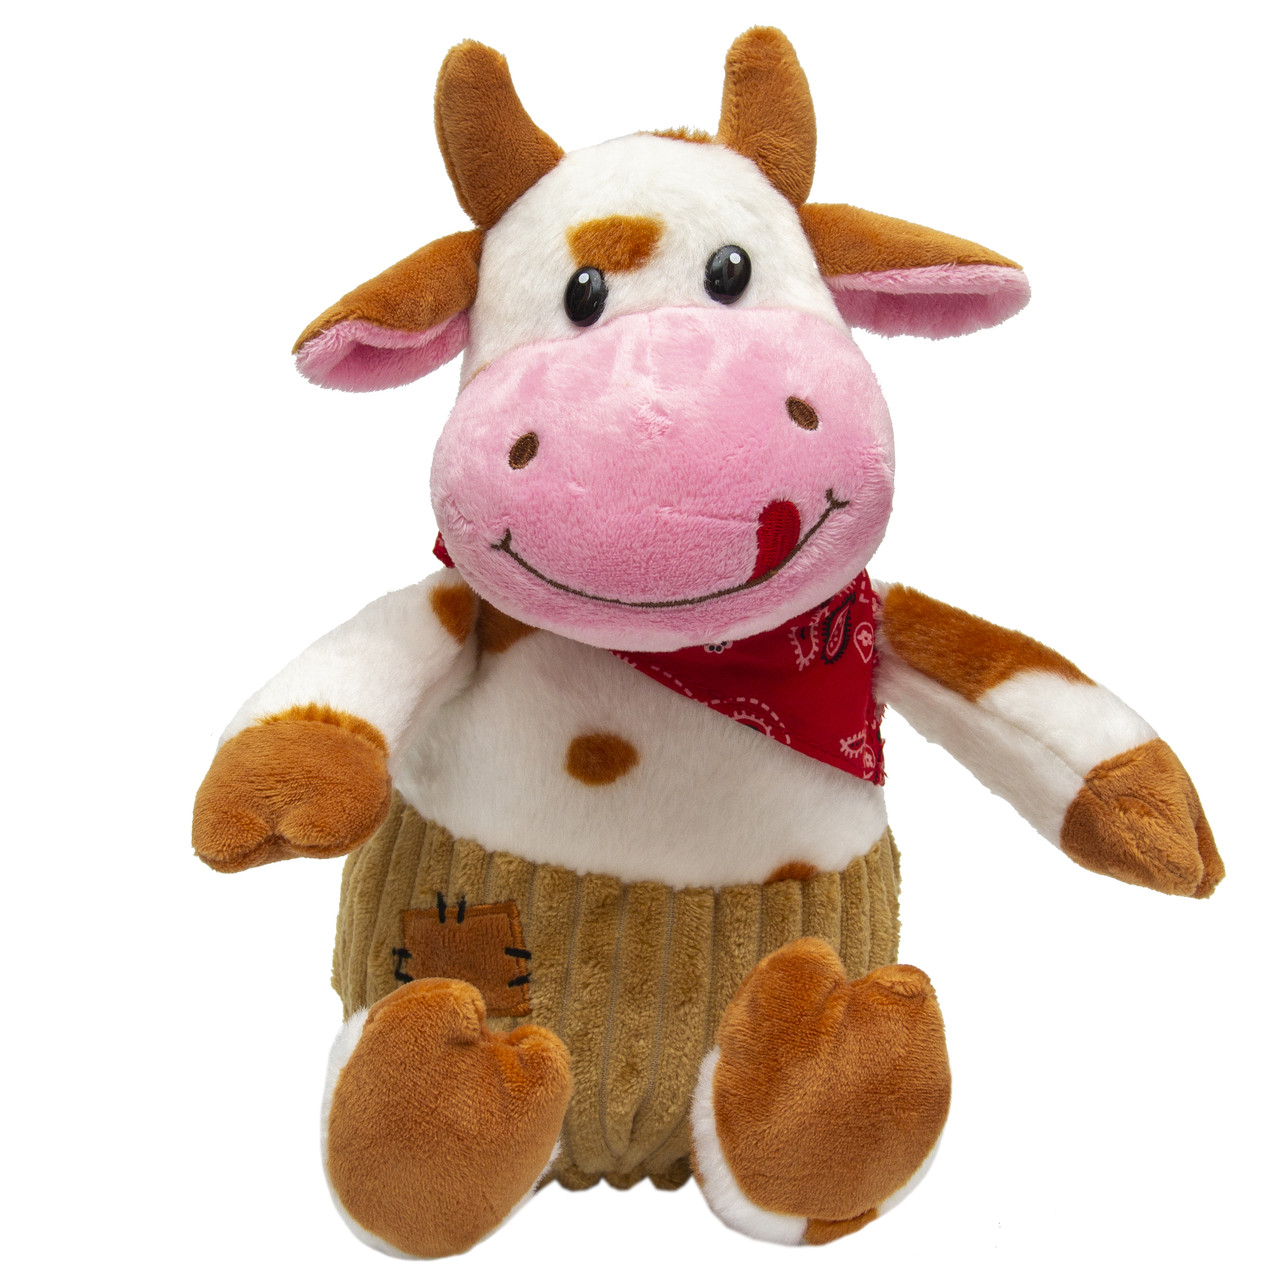 М'яка іграшка - бик в штанцях, 23 см, рудий, плюш (394967)